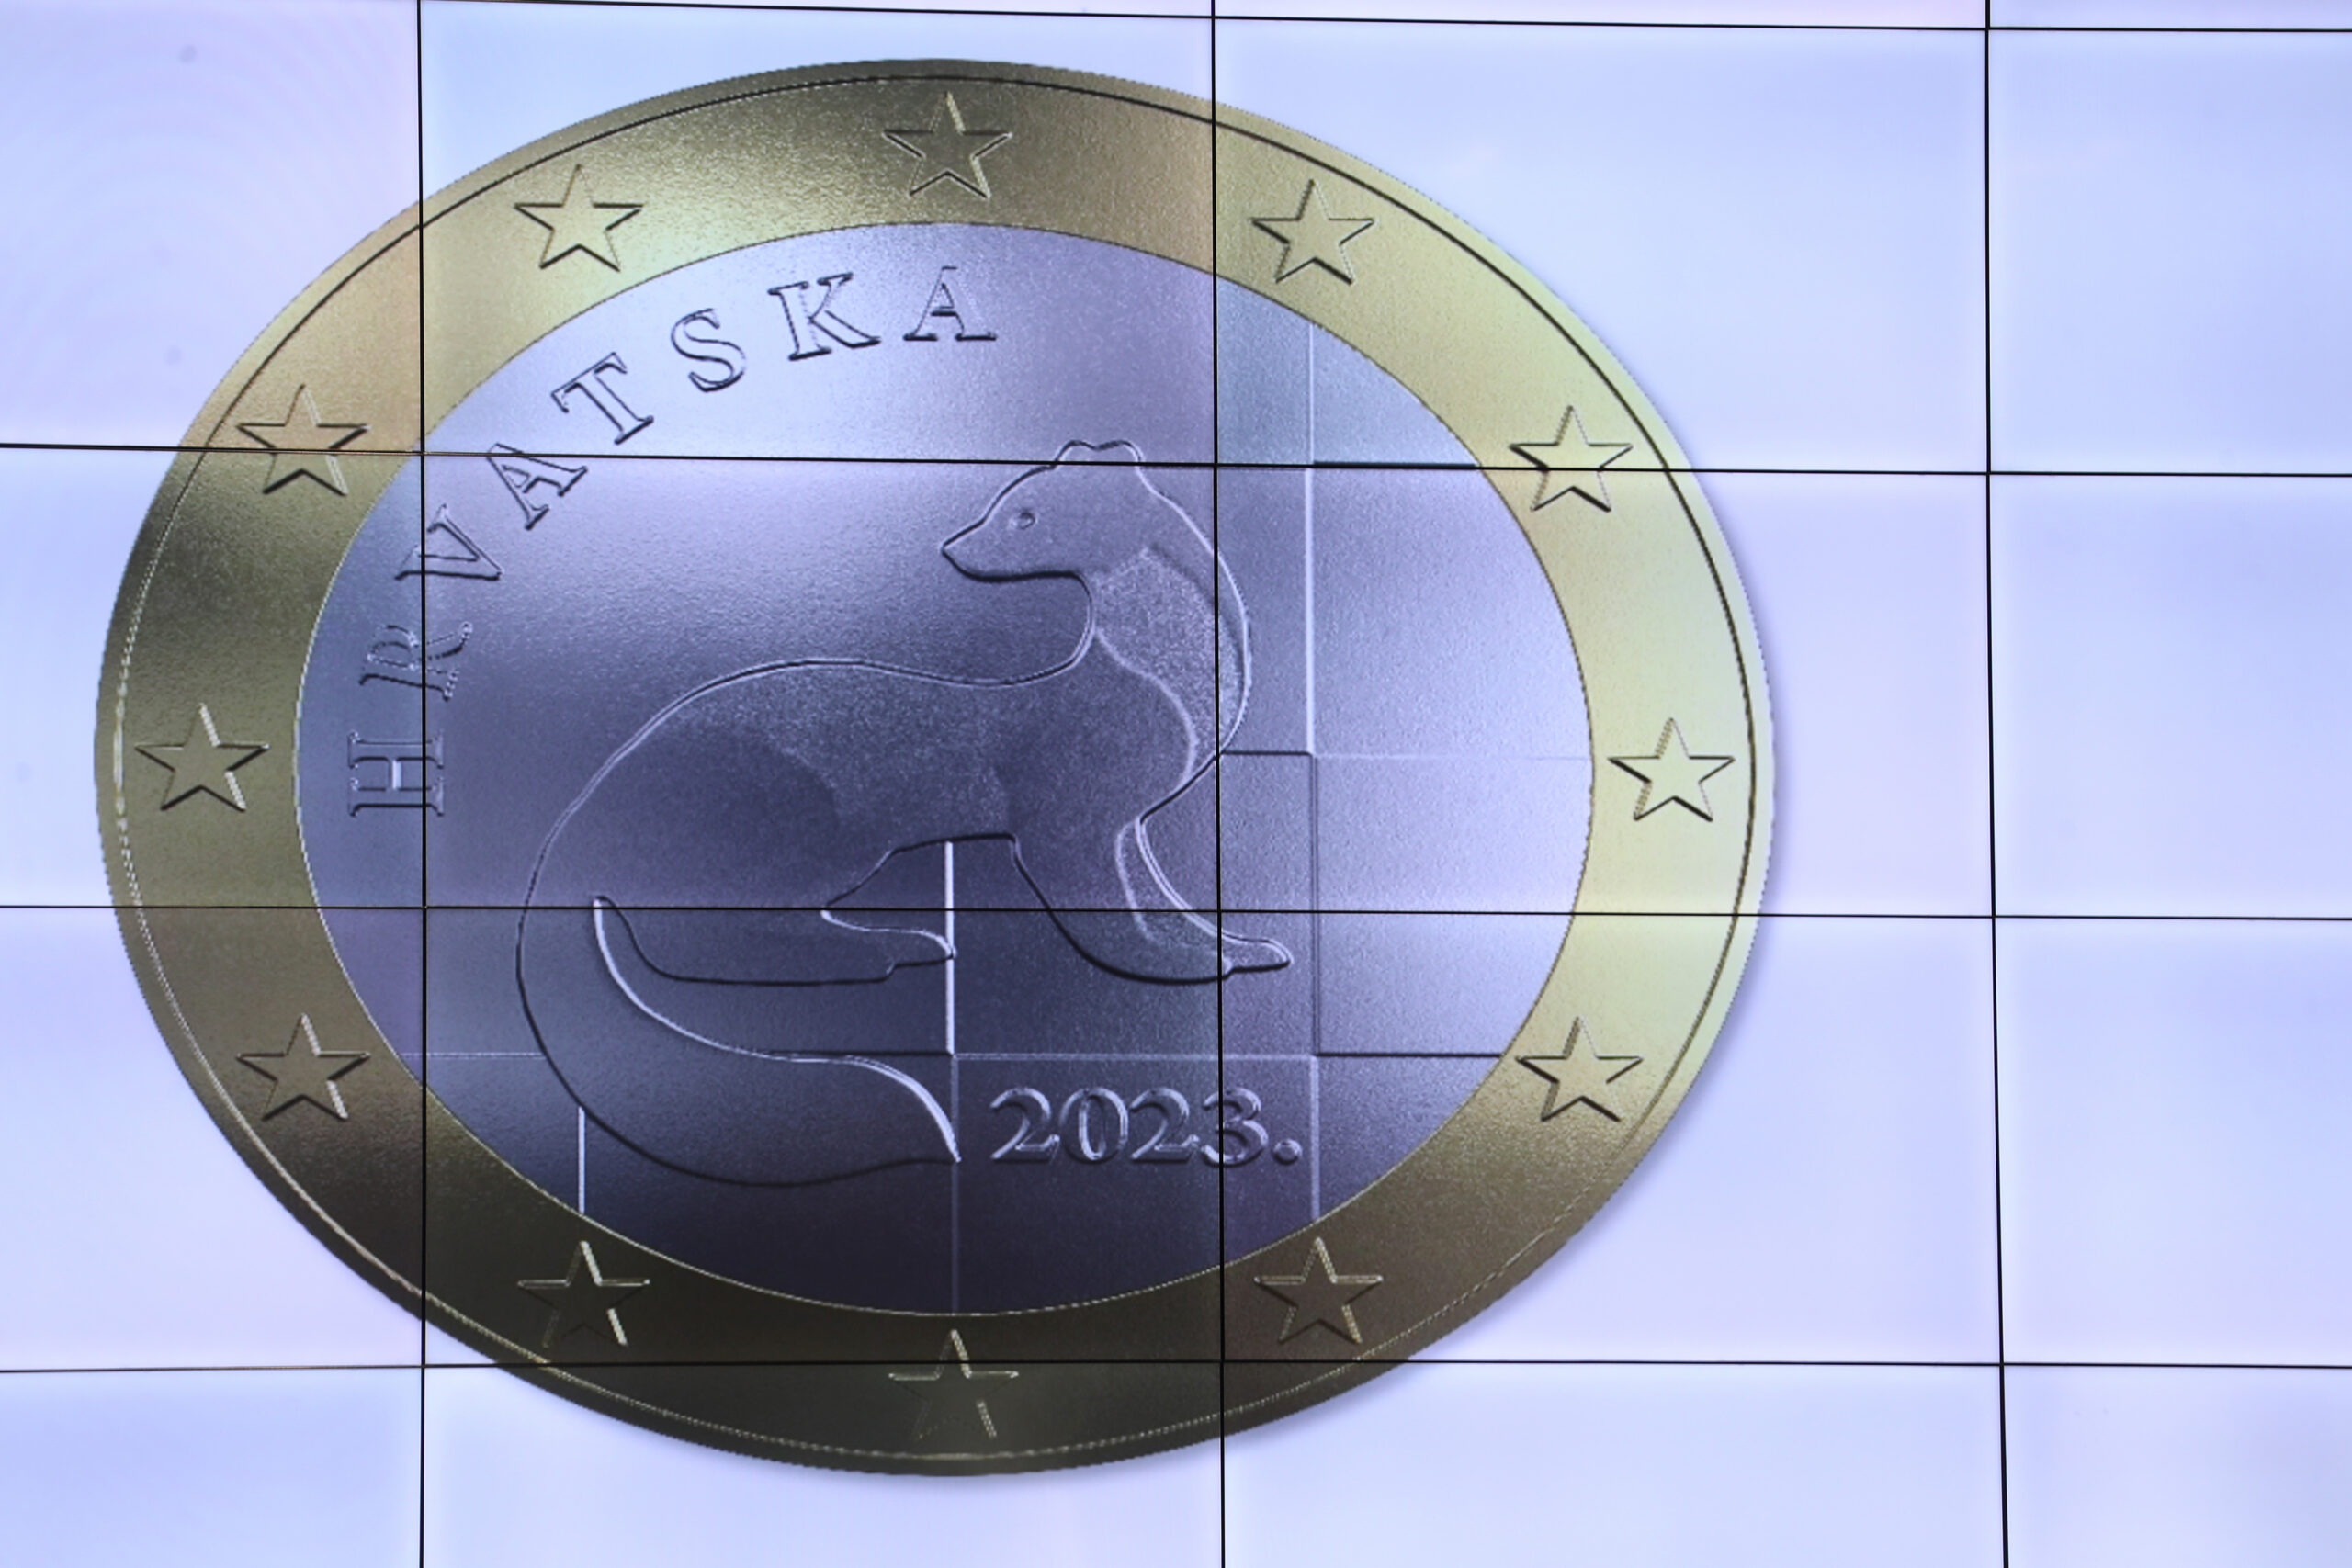 Od naredne godine evro zvanična valuta u Hrvatskoj: Kune će se mjesecima koristiti paralelno